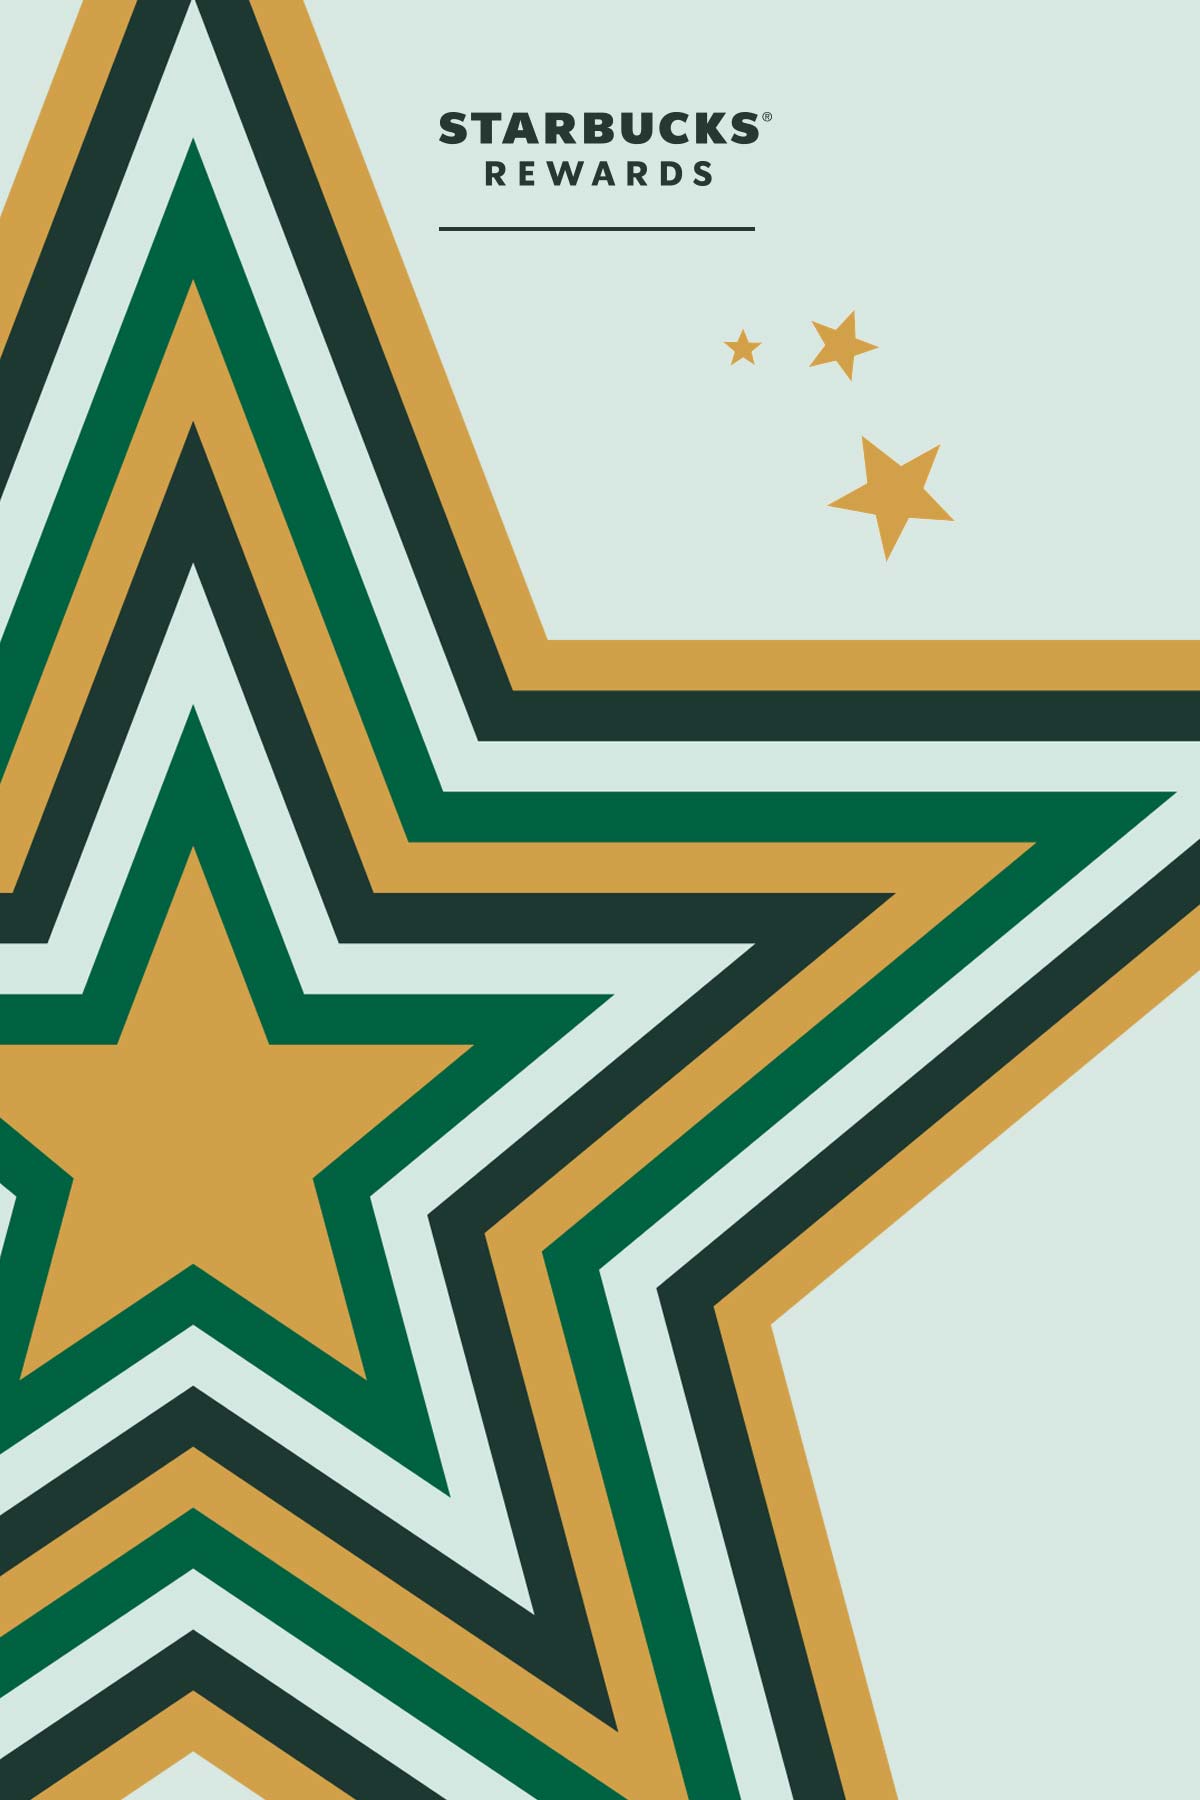 Starbucks Rewards star illustration.